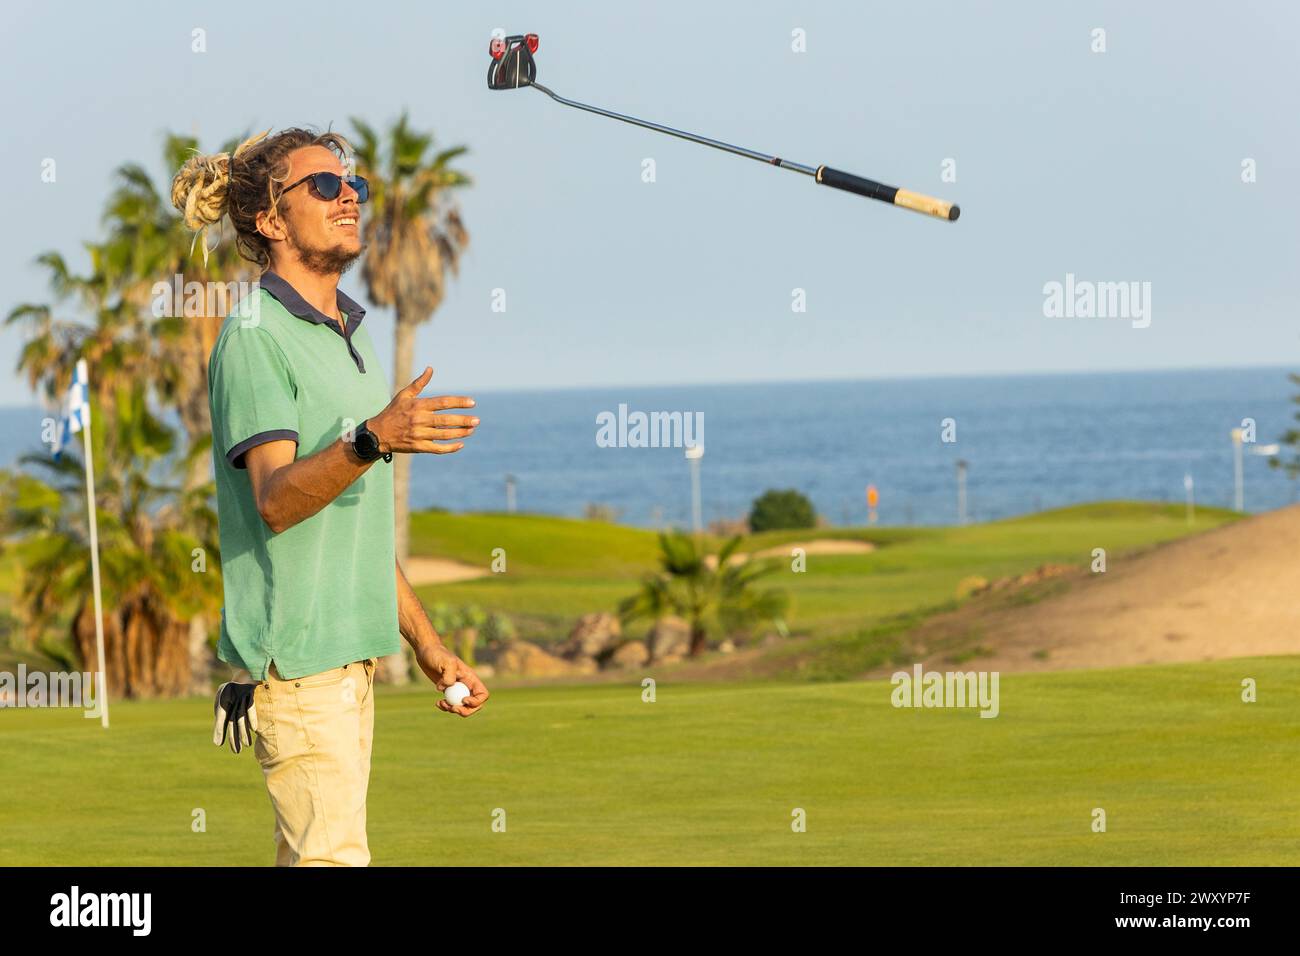 Ein junger Golfspieler mit Dreadlocks dreht seinen Golfschläger nach einem Schaukeln auf einem malerischen Golfplatz am Meer lässig um. Stockfoto